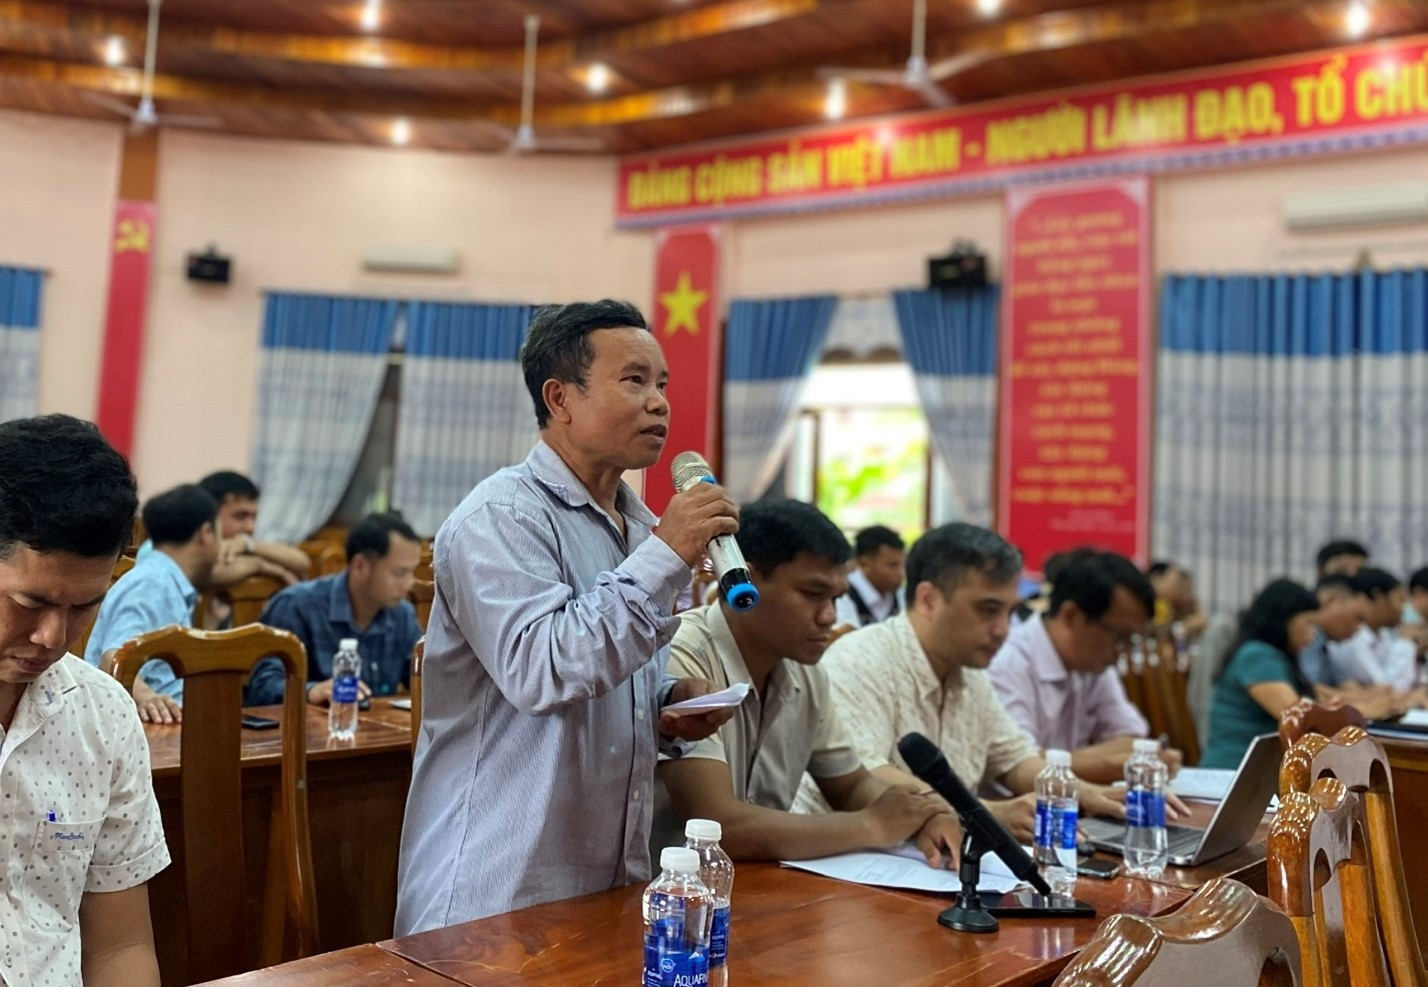 Cử tri phát biểu trong một phiên tiếp xúc cử tri của Đoàn ĐBQH tỉnh Quảng Nam.